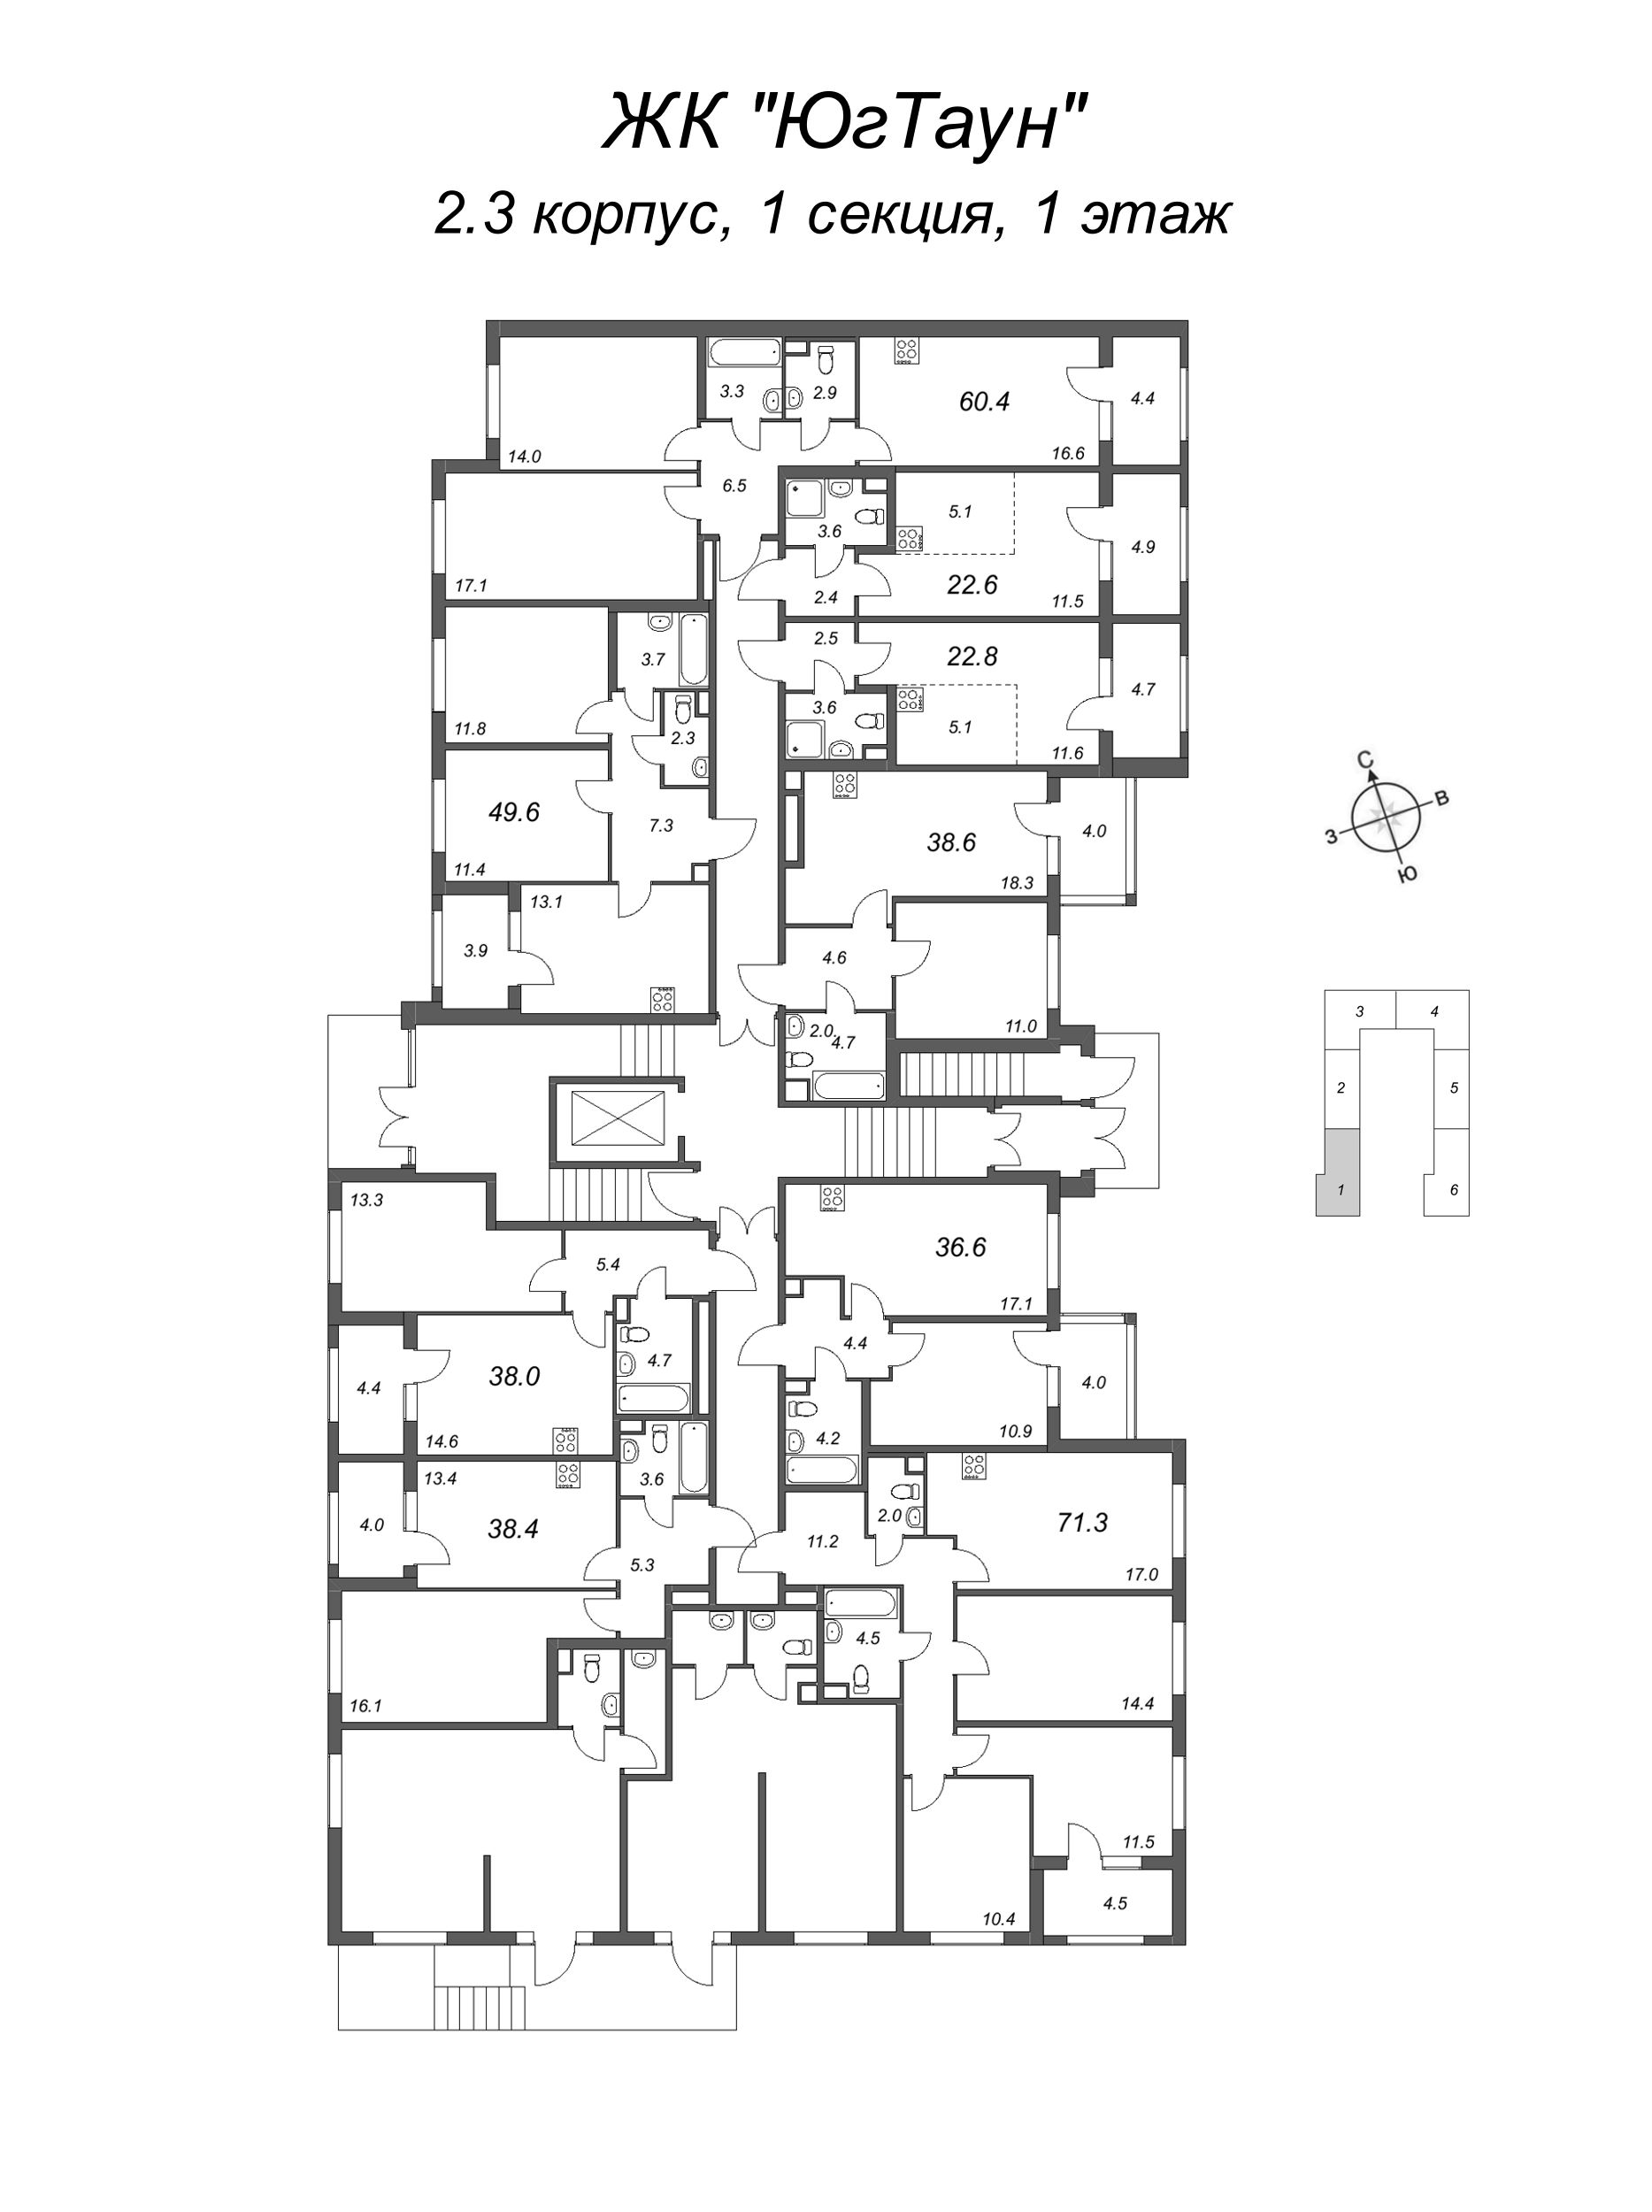 Квартира-студия, 22.8 м² в ЖК "ЮгТаун" - планировка этажа